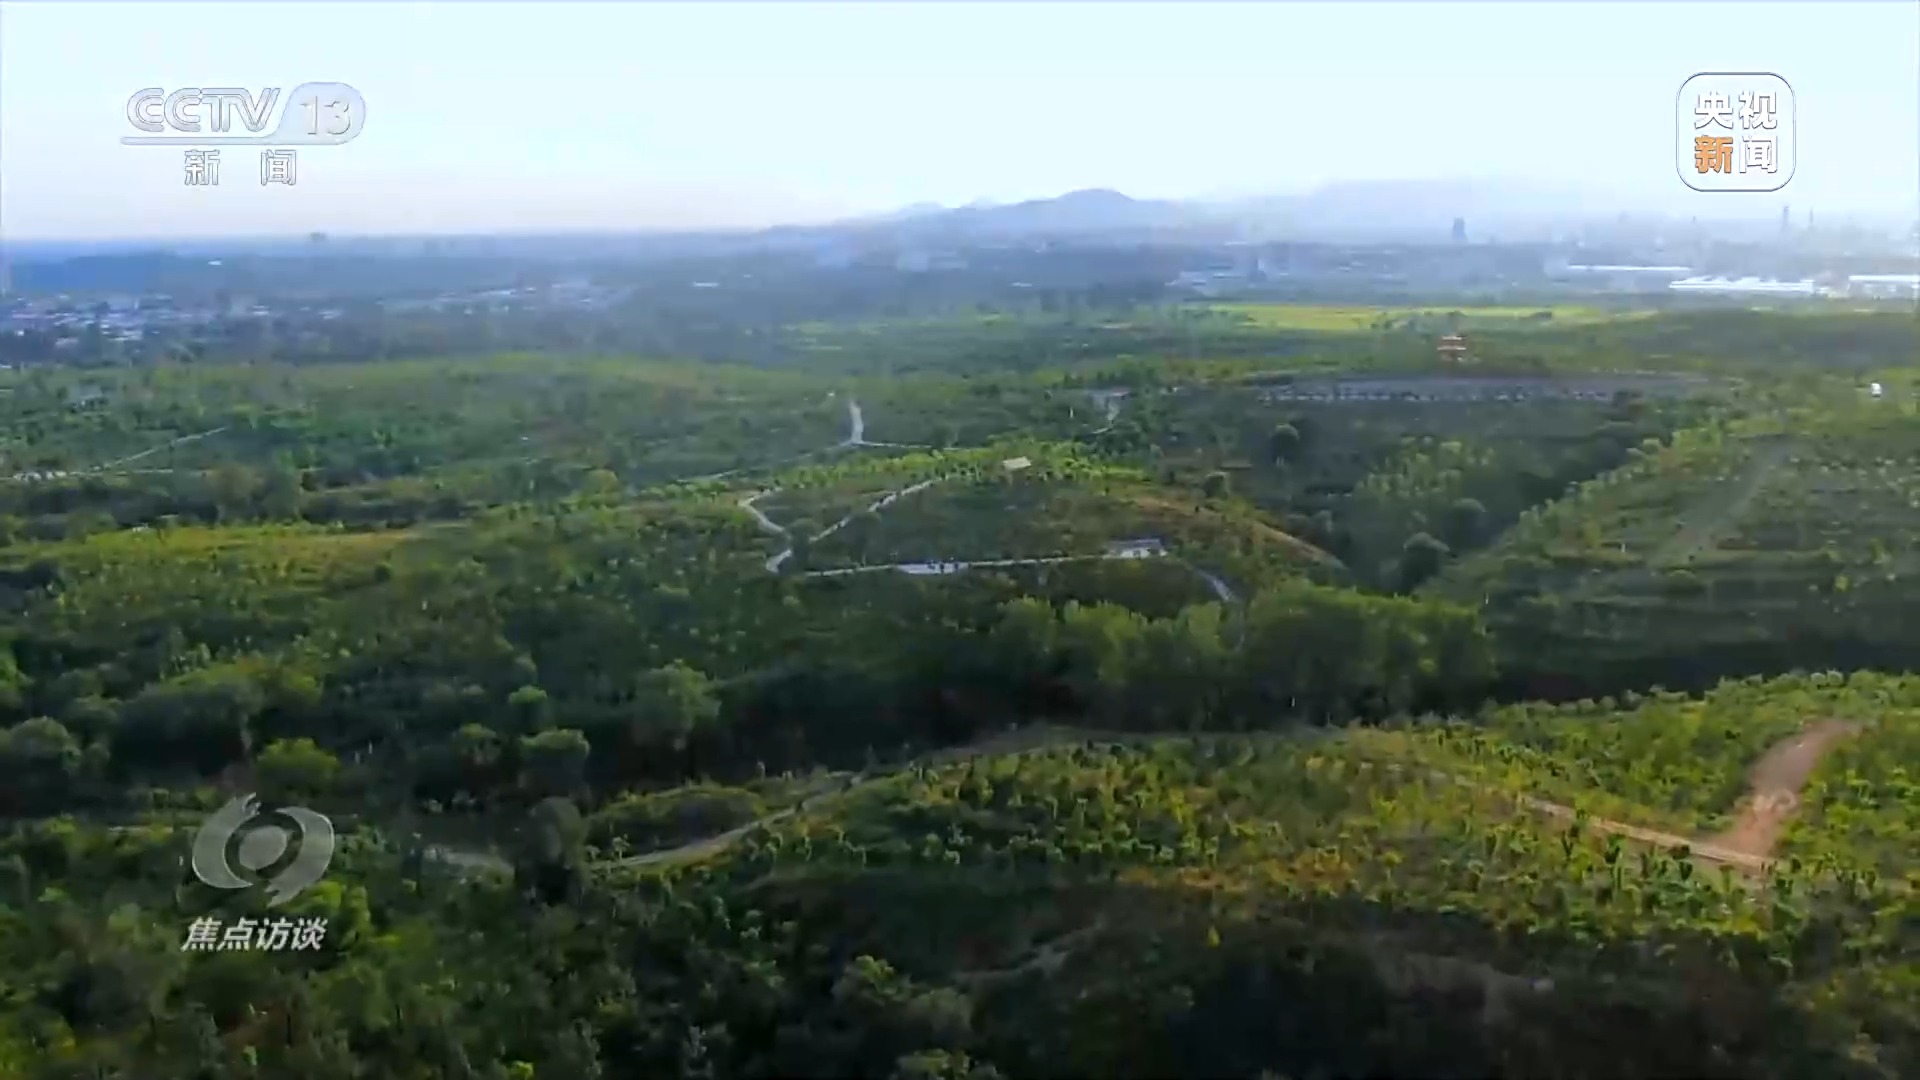 焦點訪談丨全民植樹增綠 共建美麗中國